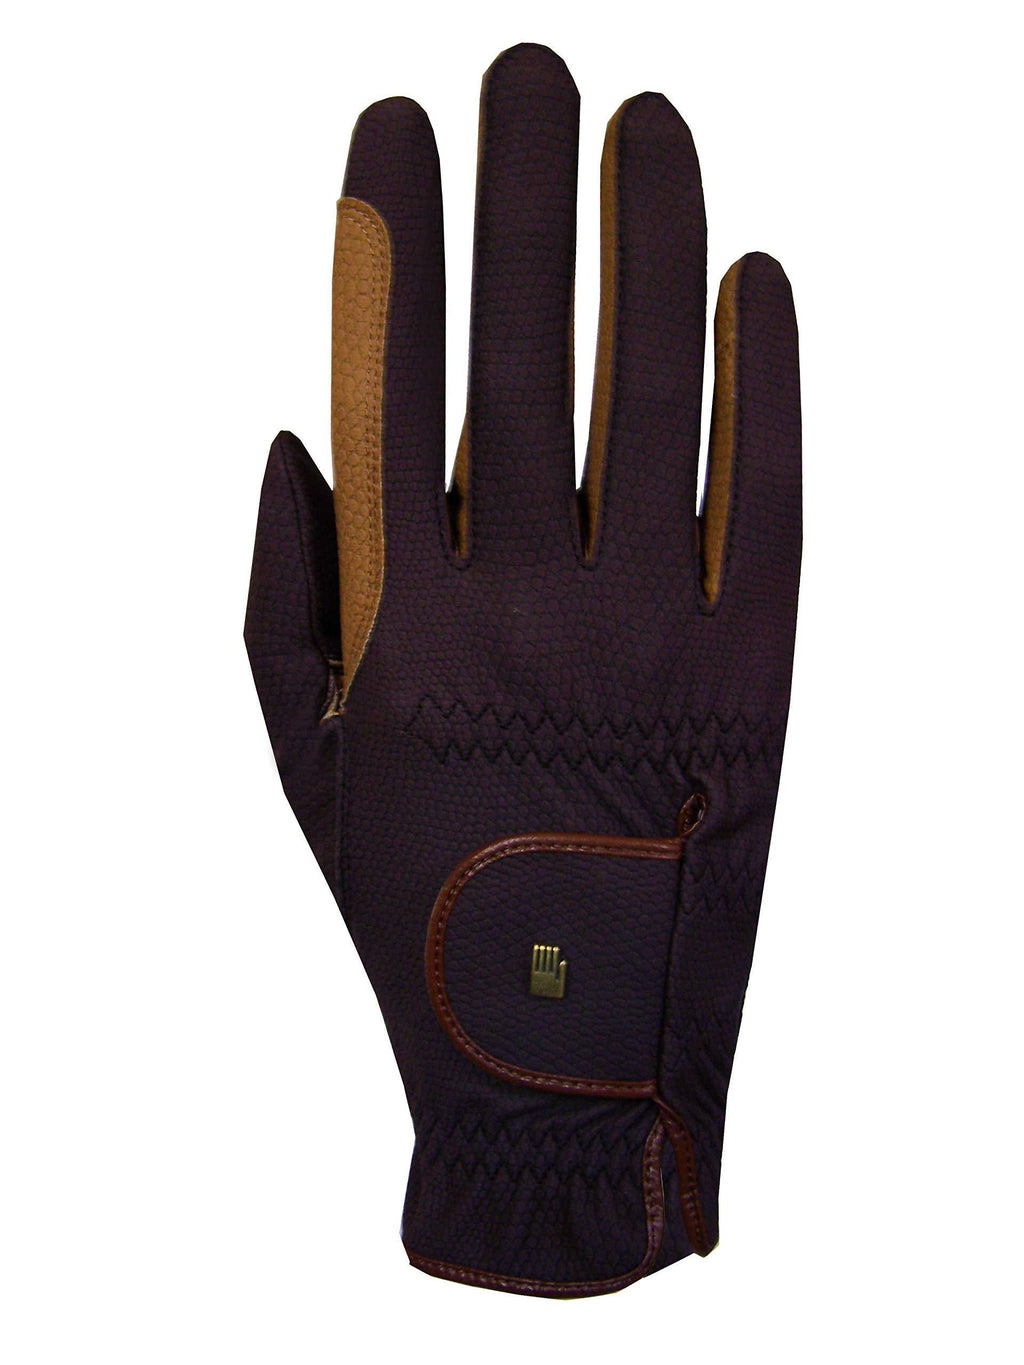 [AUSTRALIA] - Roeckl Malta Unisex Gloves Mocha 8.5 